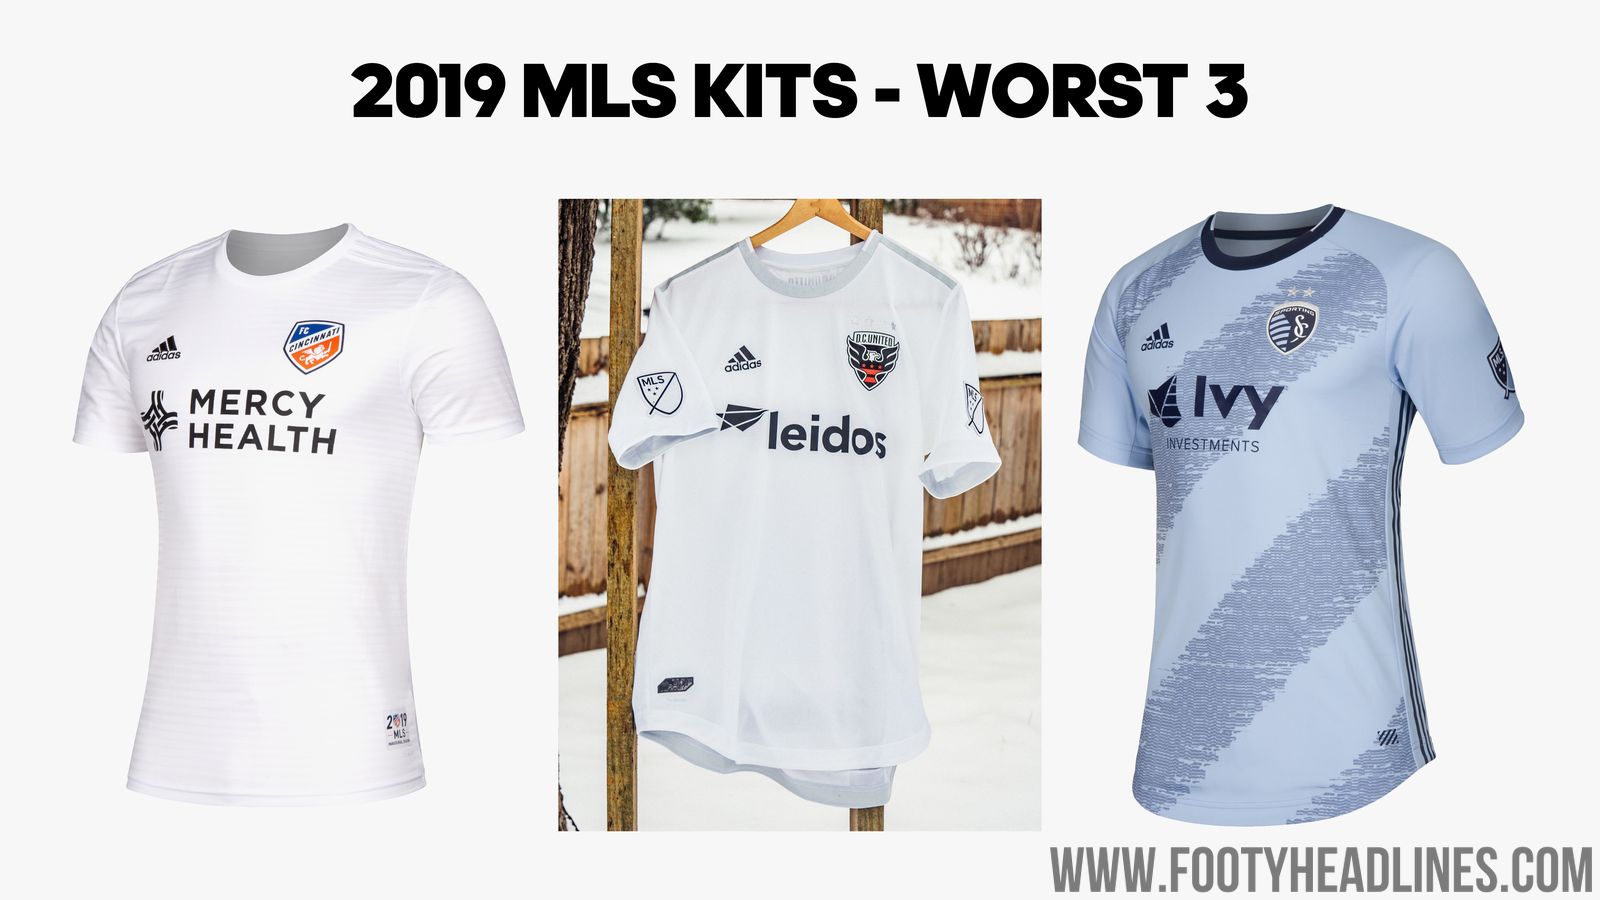 Ranking All 25 New 2019 MLS Kits - Footy Headlines